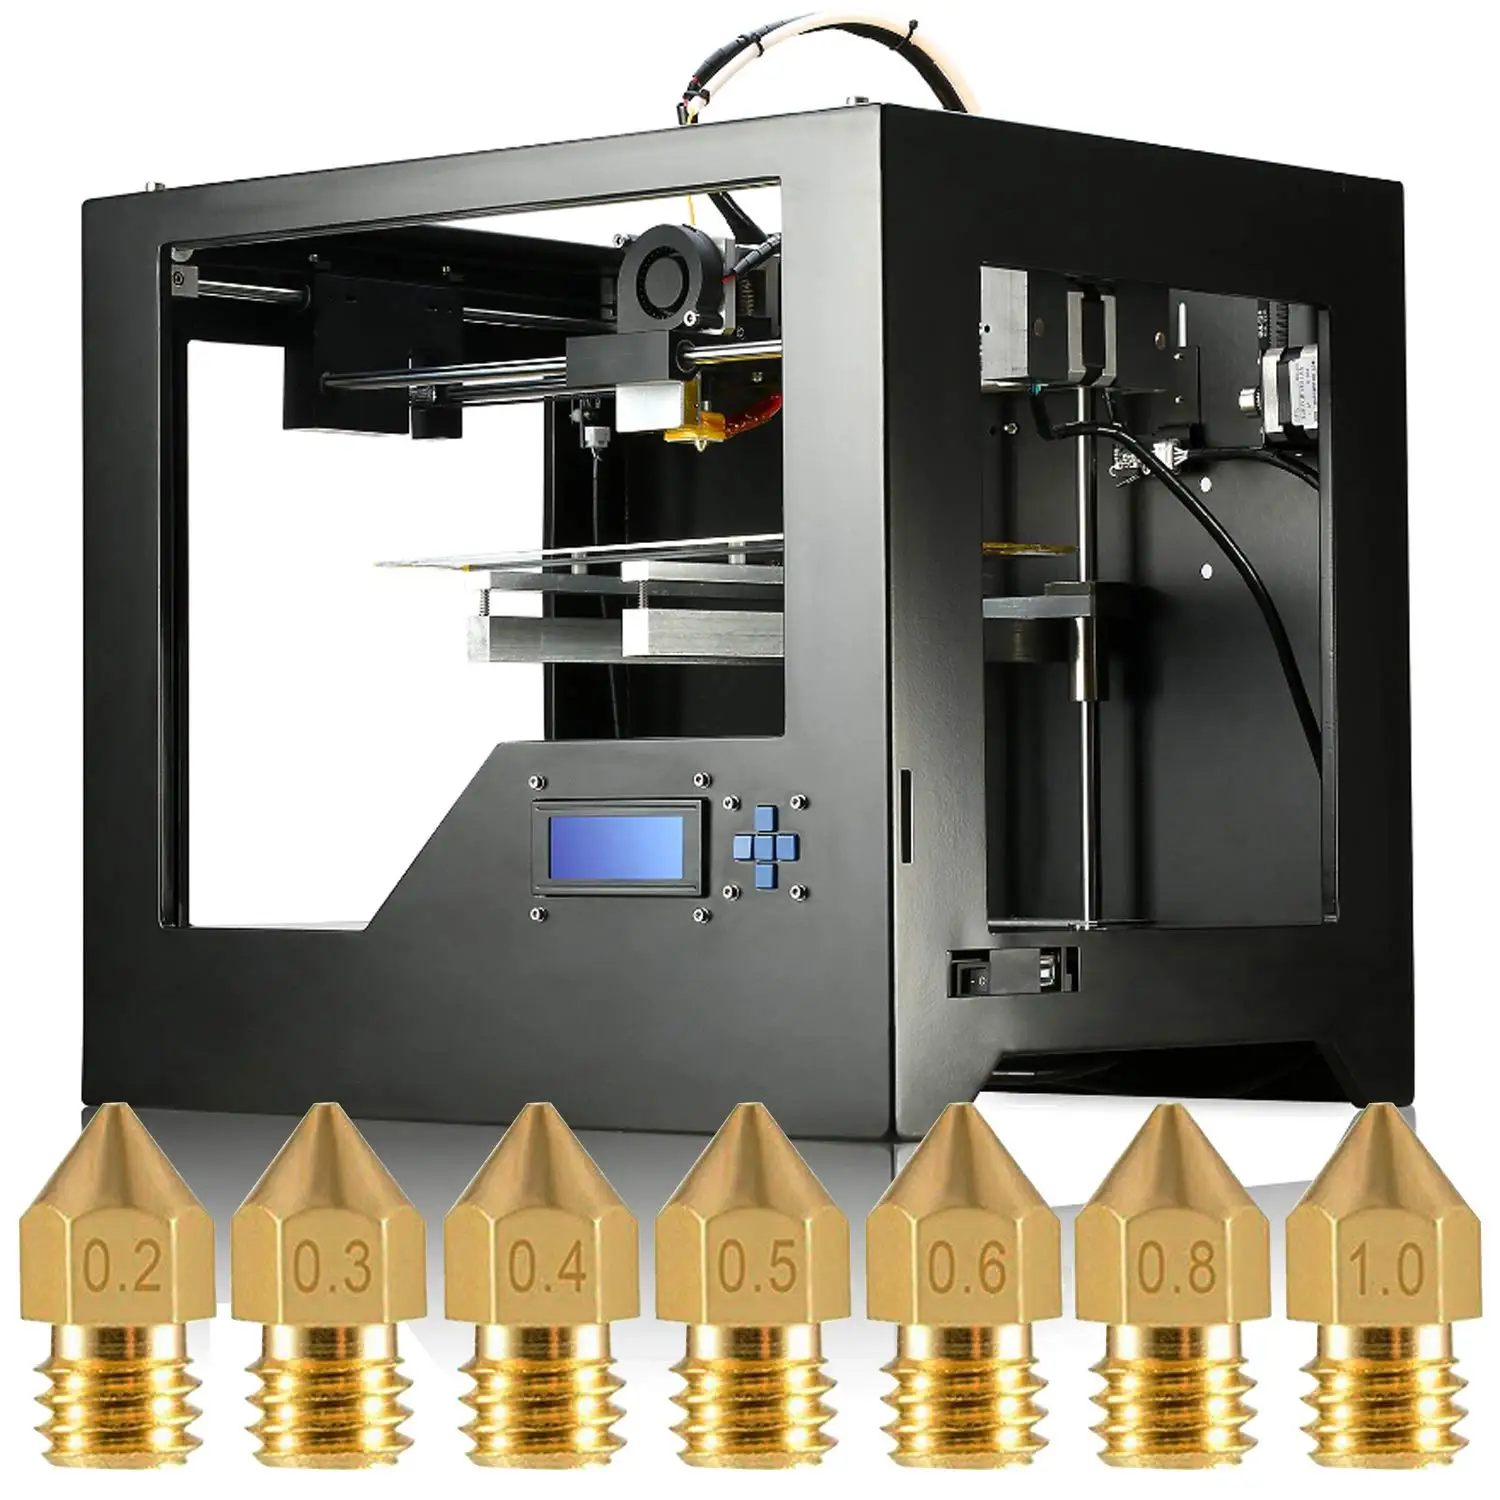 HOT-3D сопло принтера, 32 шт. Mk8 экструдер печатающая головка 0,2 мм, 0,3 мм, 0,4 мм, 0,5 мм, 0,6 мм, 0,8 мм, 1,0 мм для Makerbot Creality